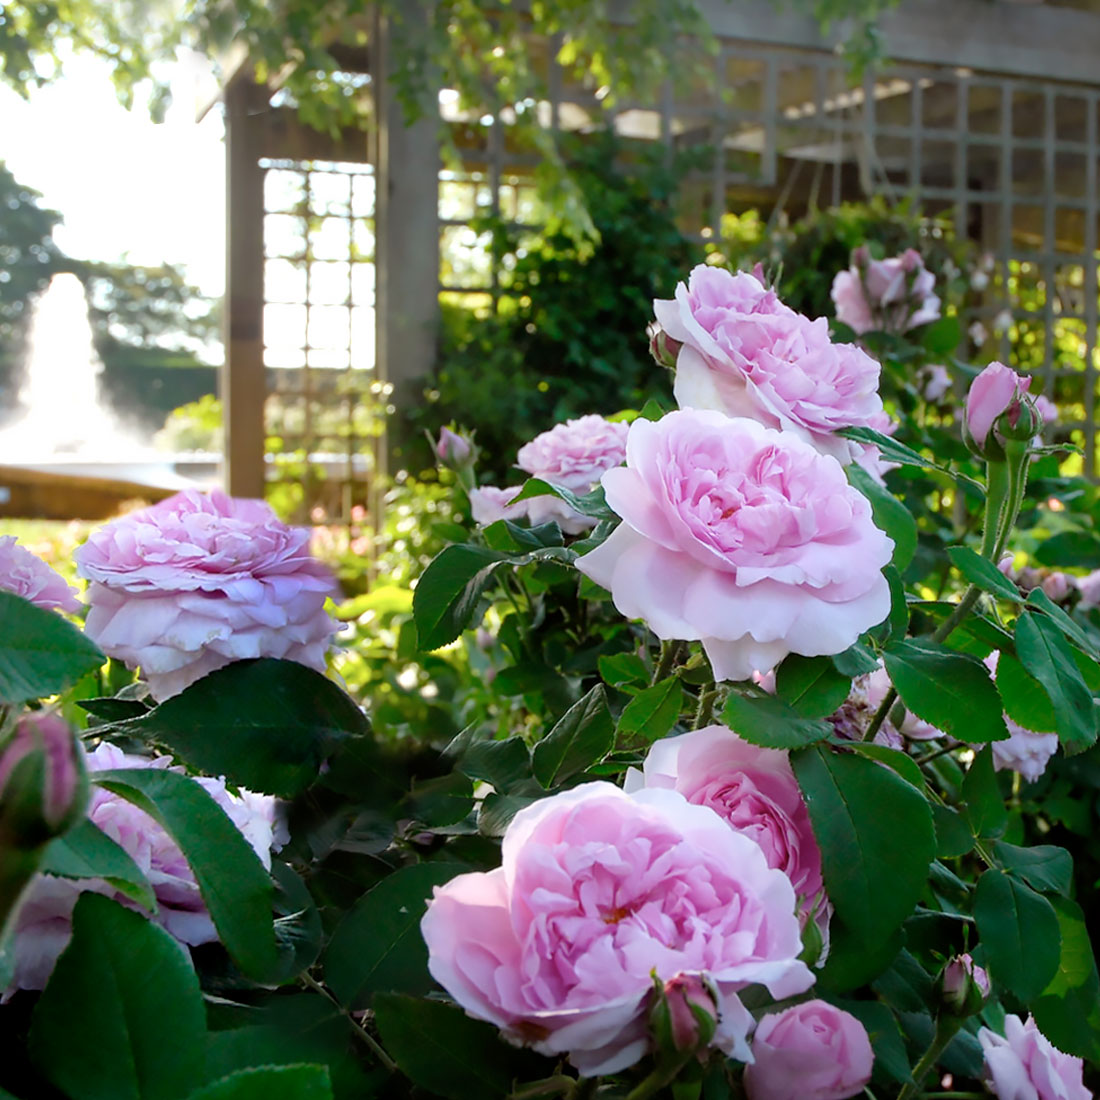 The Krasberg Rose Garden